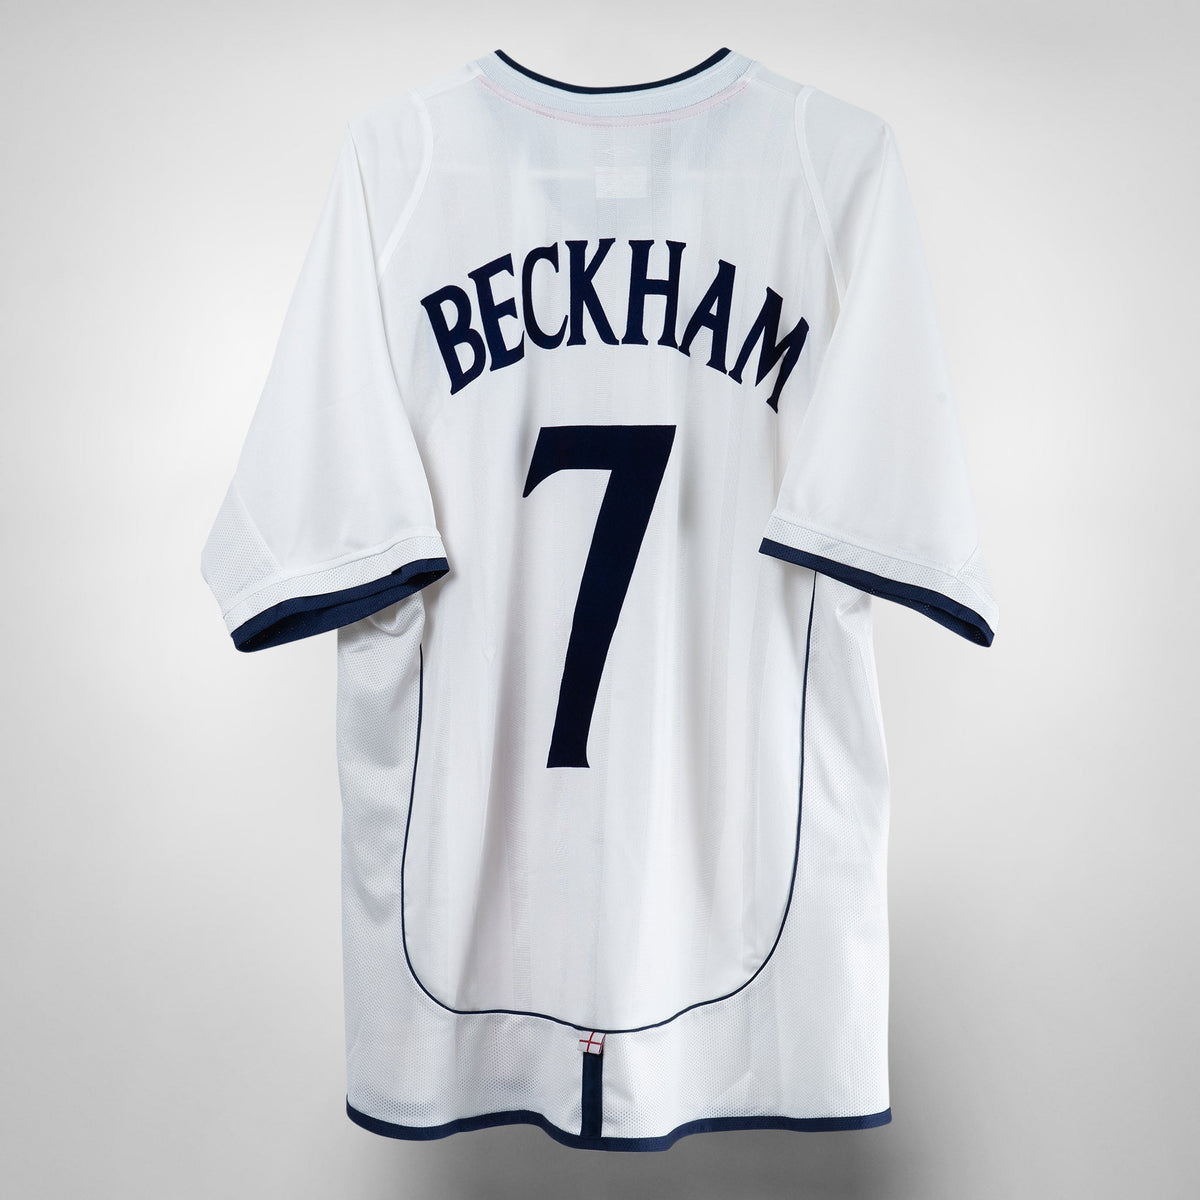 2001-2003 England Umbro Home Shirt #7 Beckham - Marketplace